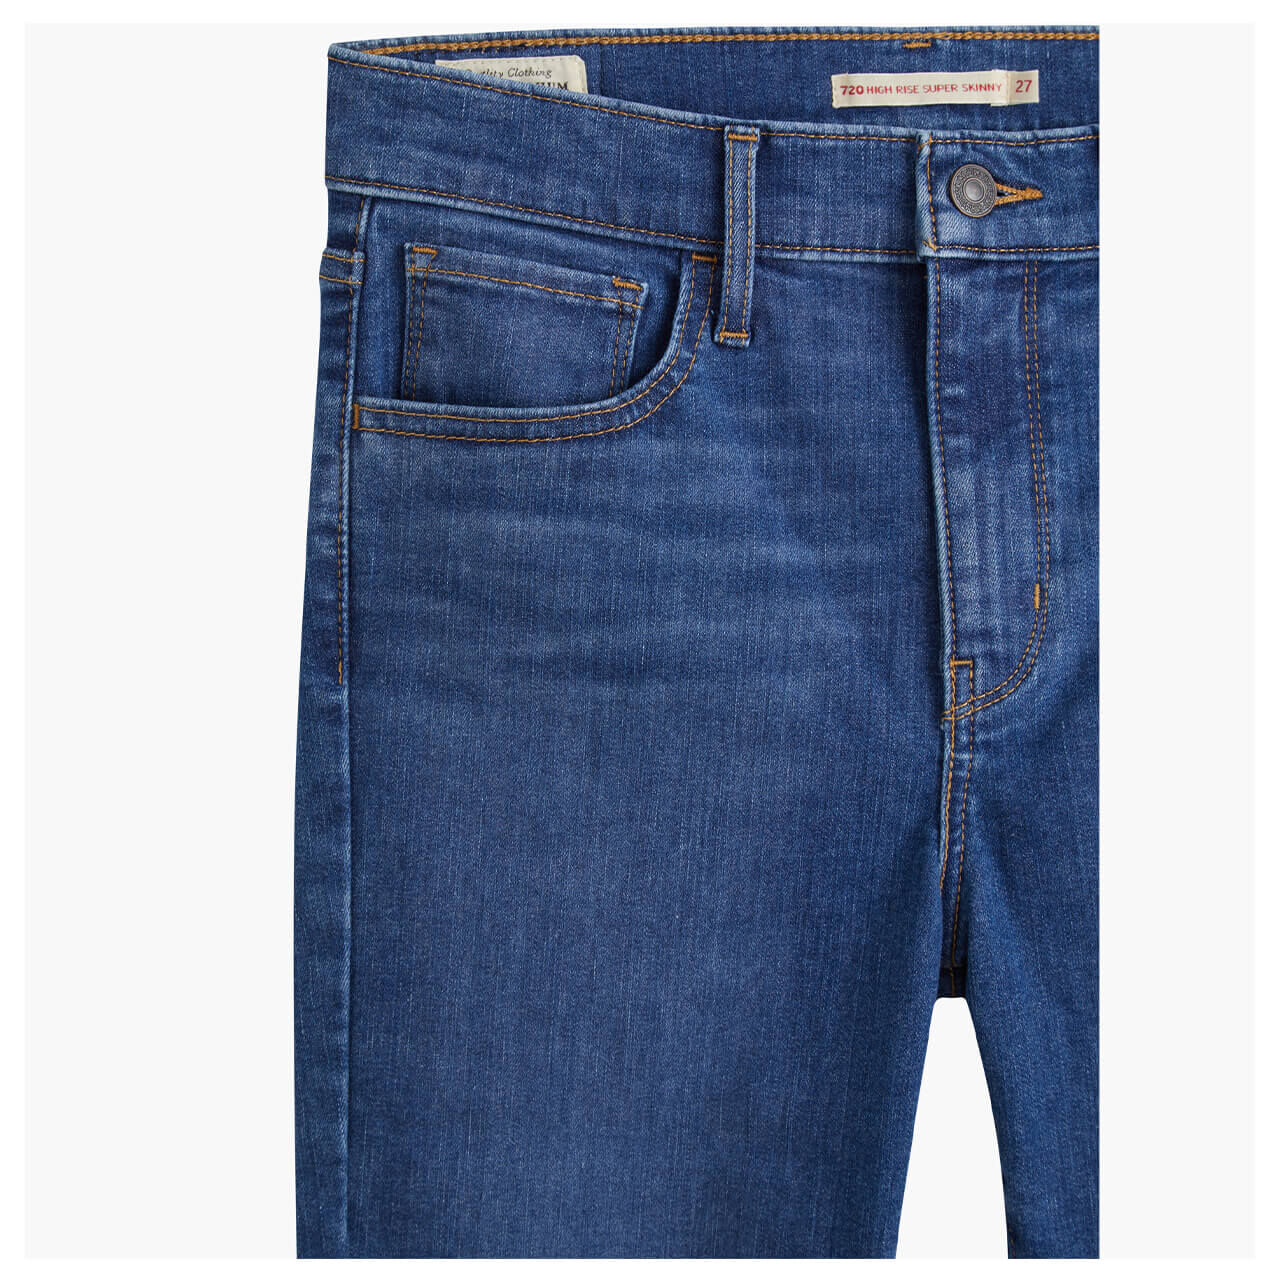 Levis Jeans 720 für Damen in Mittelblau angewaschen, FarbNr.: 0259